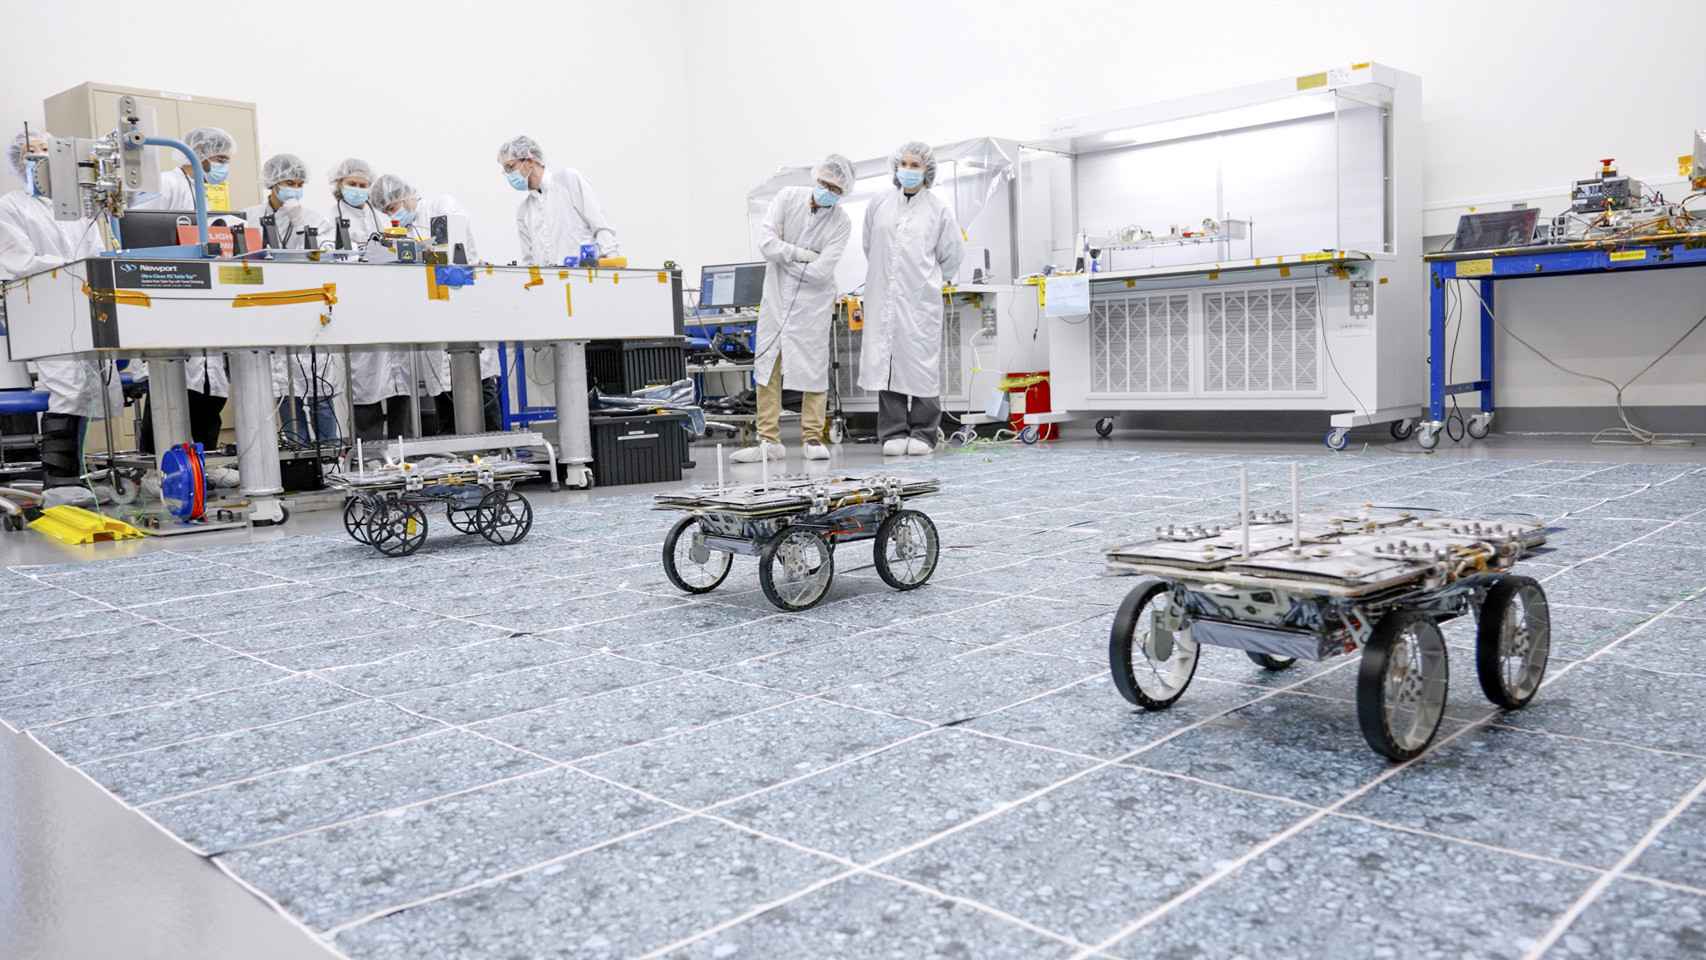 Rovers de la NASA en una demostración técnica.